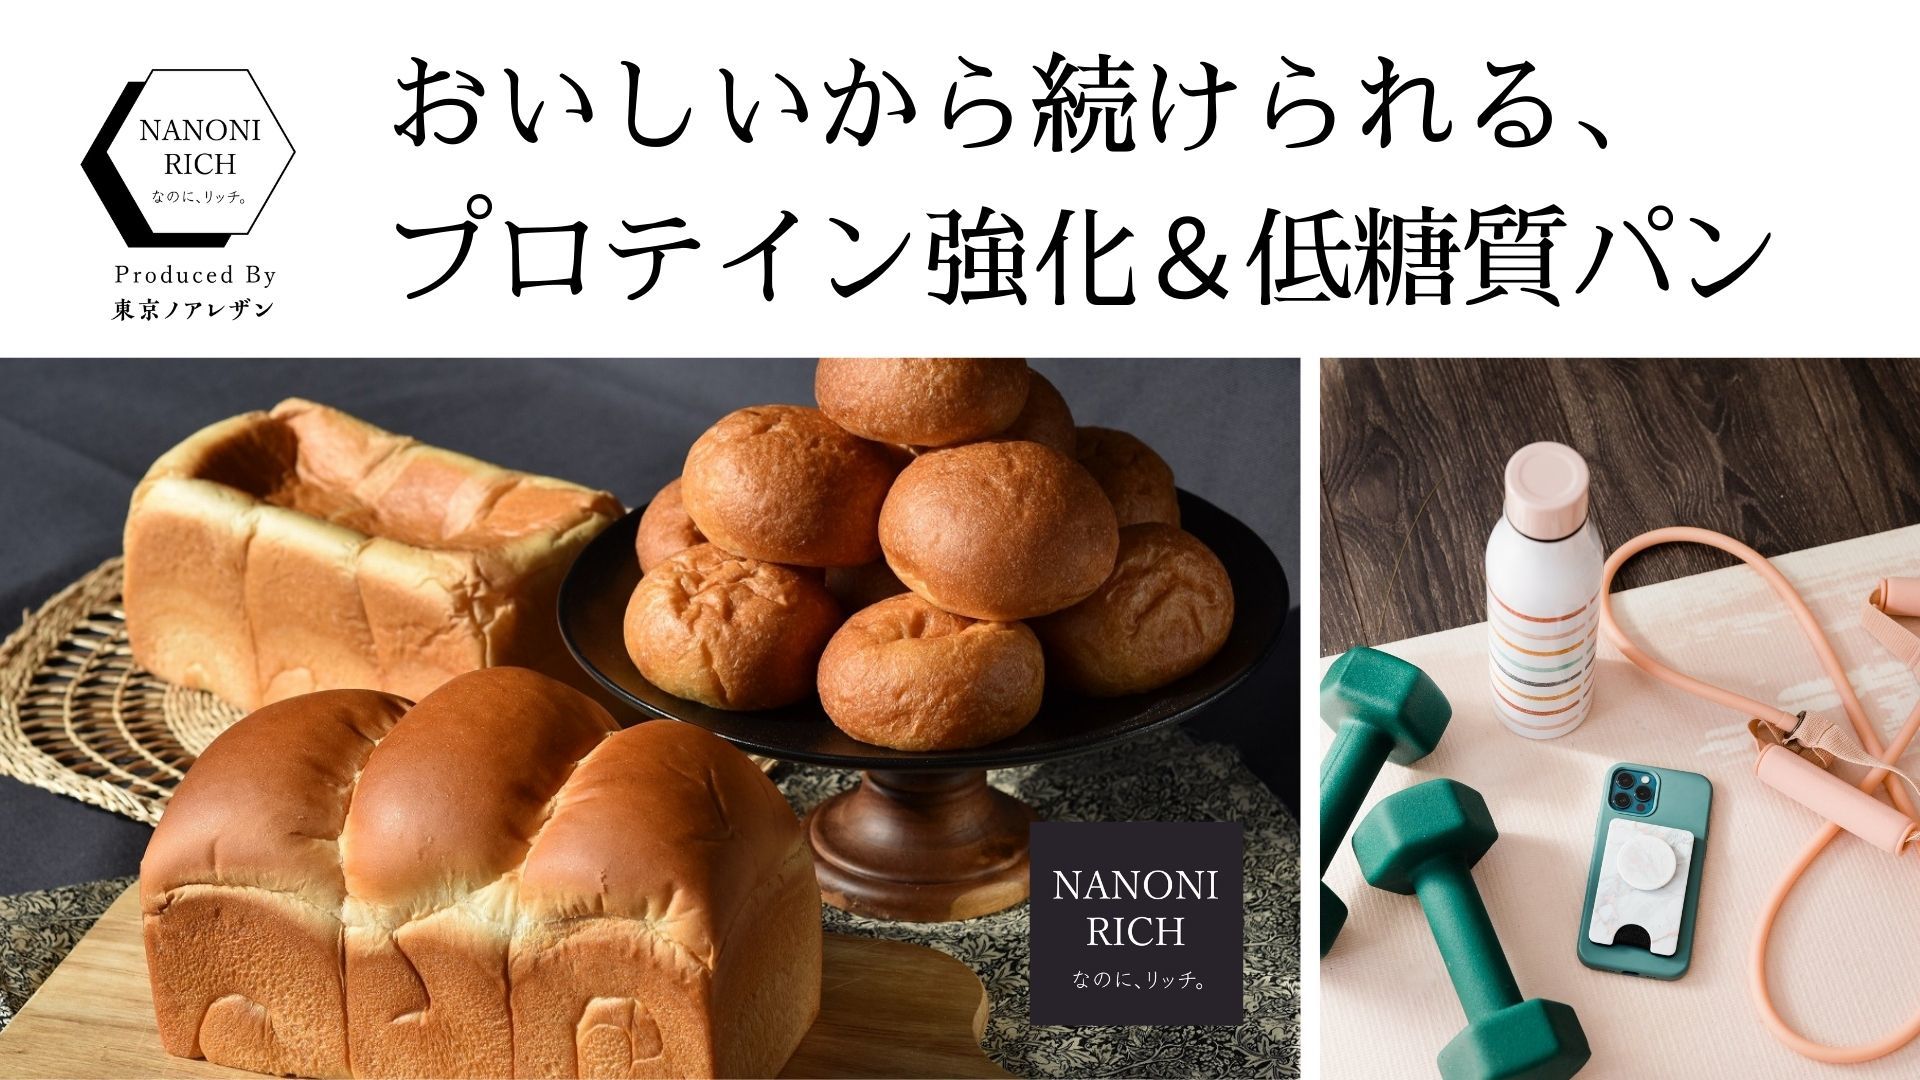 高級食パン専門店「東京ノアレザン」がつくる健康パンレーベル
「NANONI-RICH(なのに、リッチ)」の販売を4月からスタート！